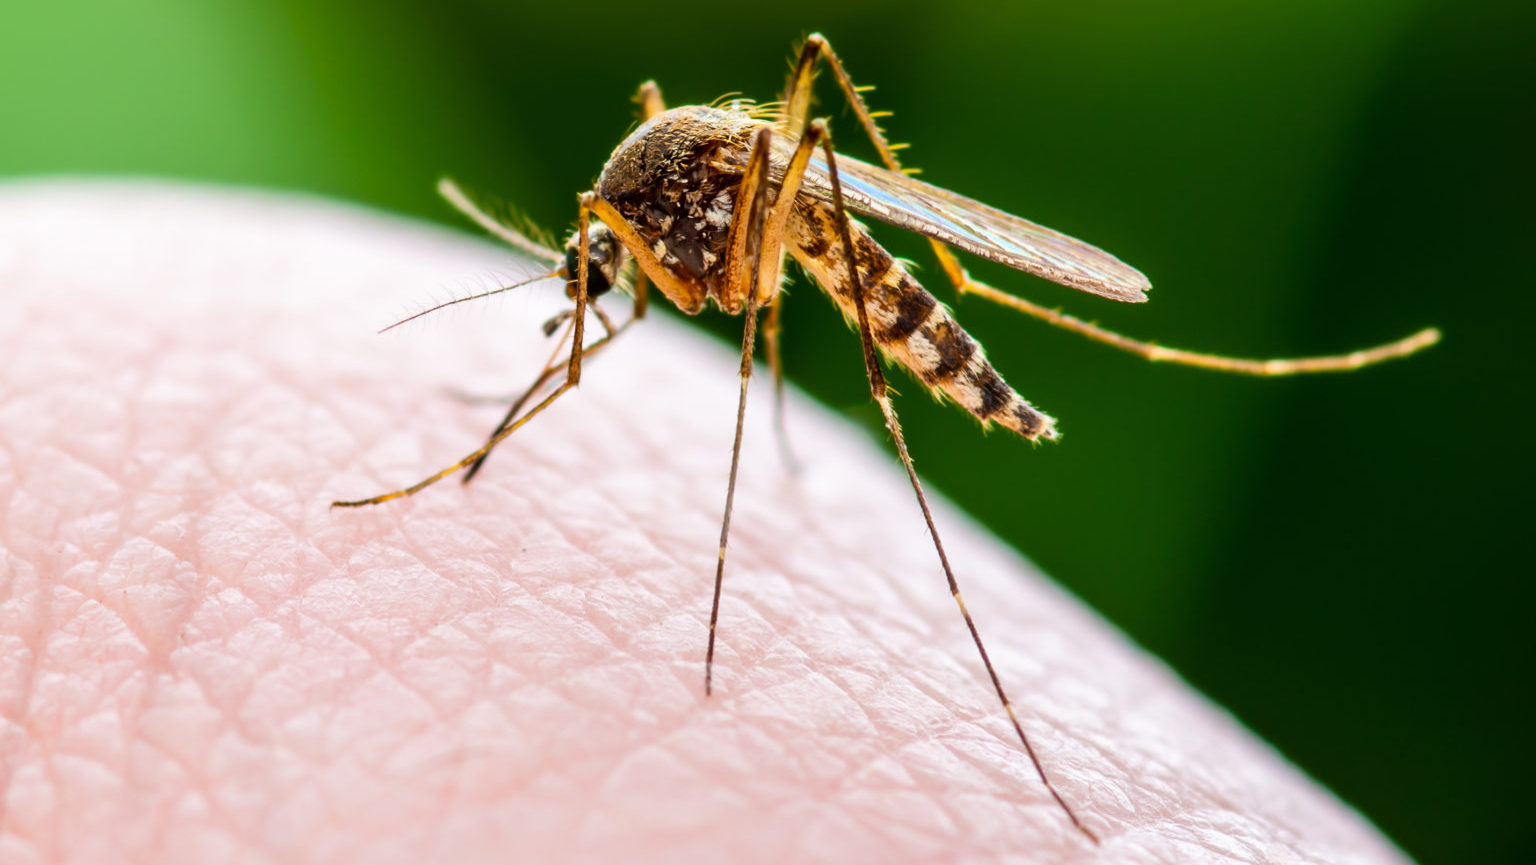 Ежегодно от укусов комаров умирает около миллиона человек.